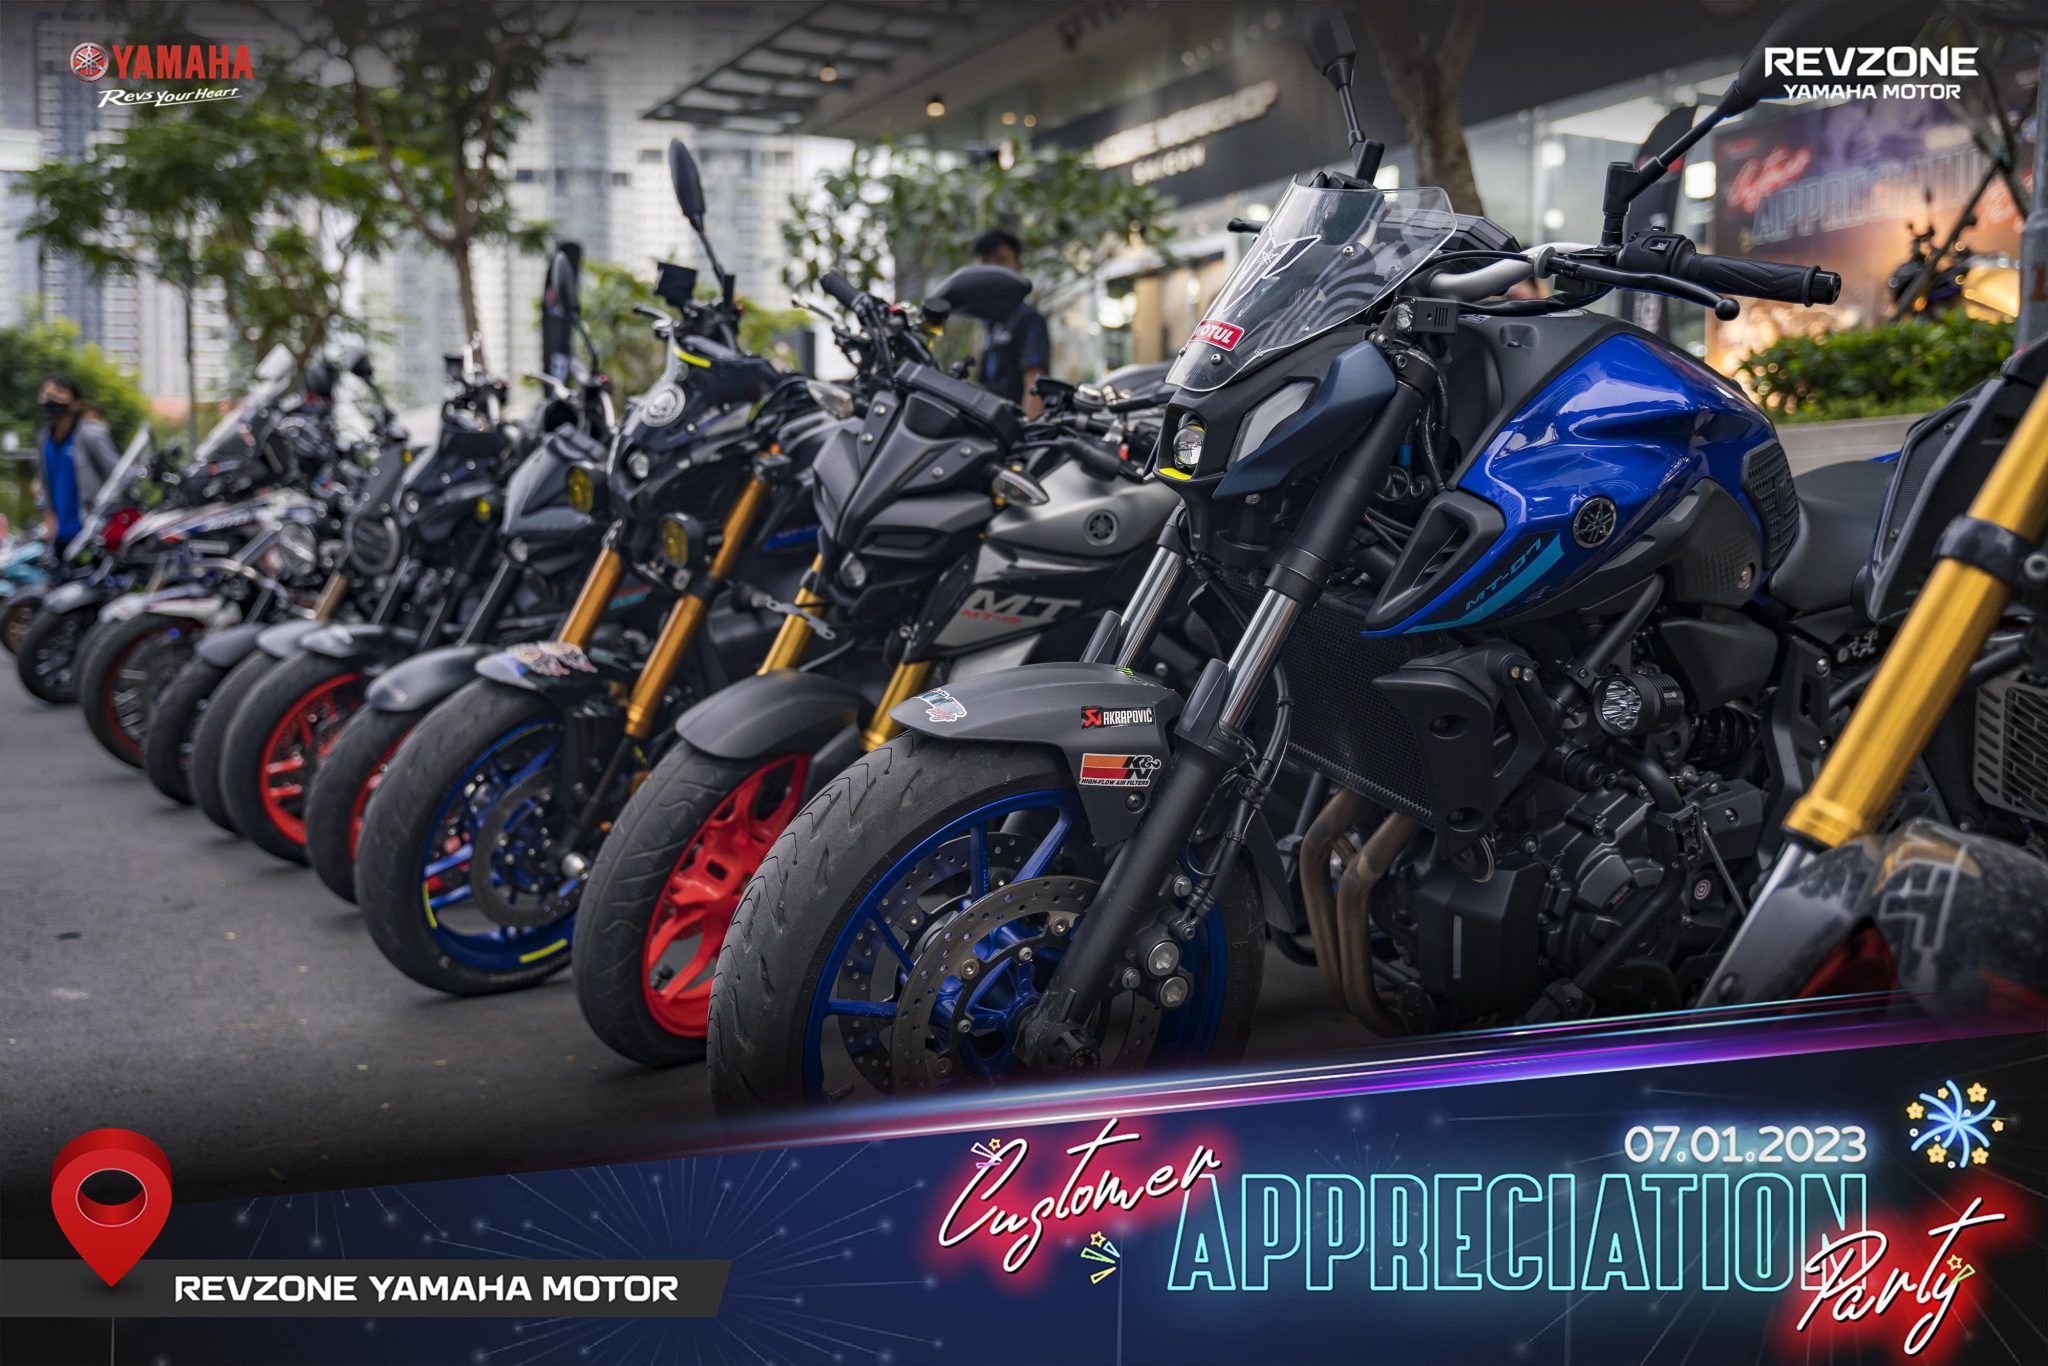 Kể từ khi ra mắt, Revzone Yamaha Motor đã giới thiệu hơn 17 mẫu xe gần như đầy đủ phân khúc